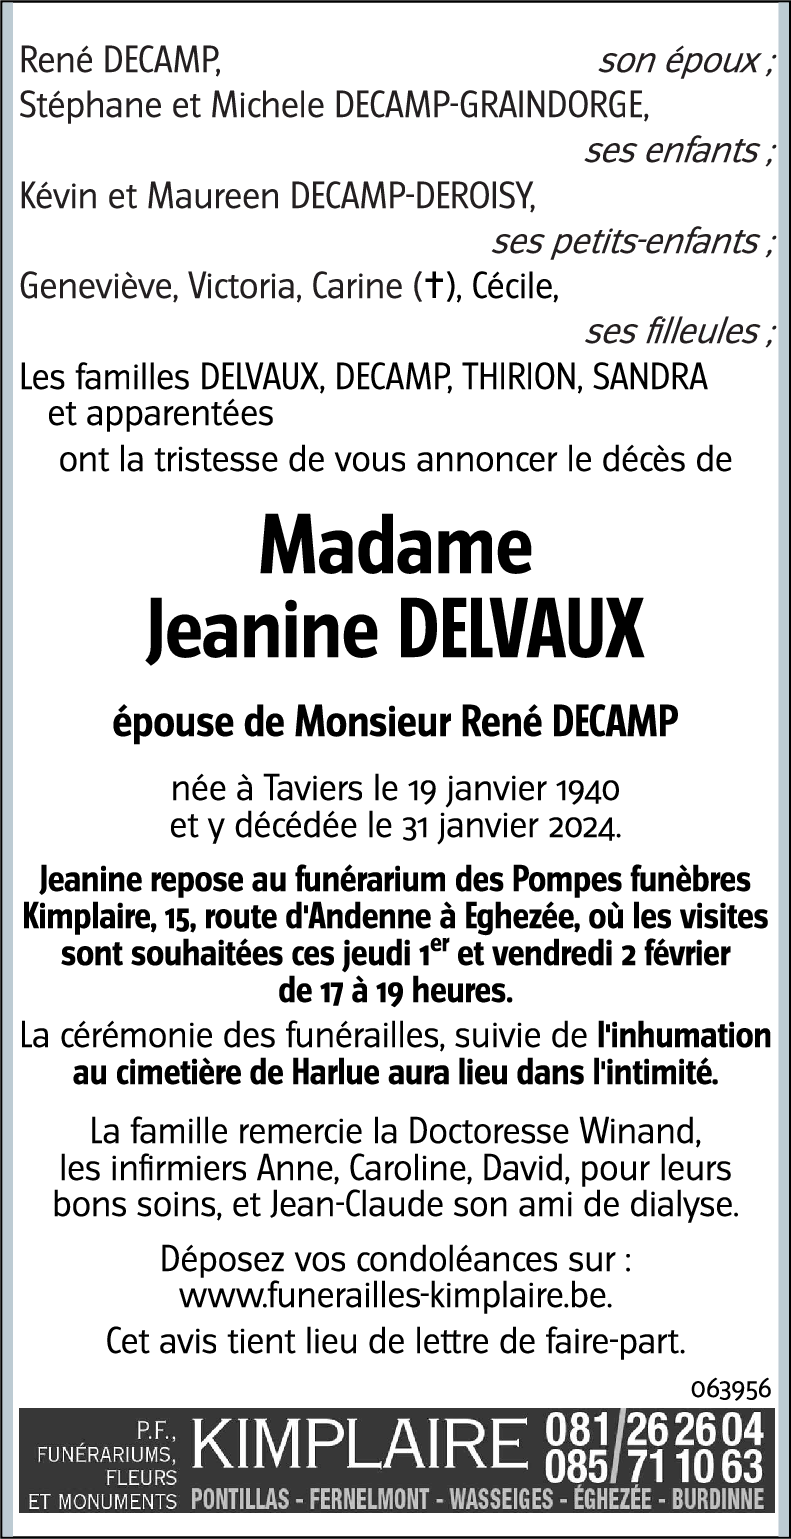 Jeanine DELVAUX